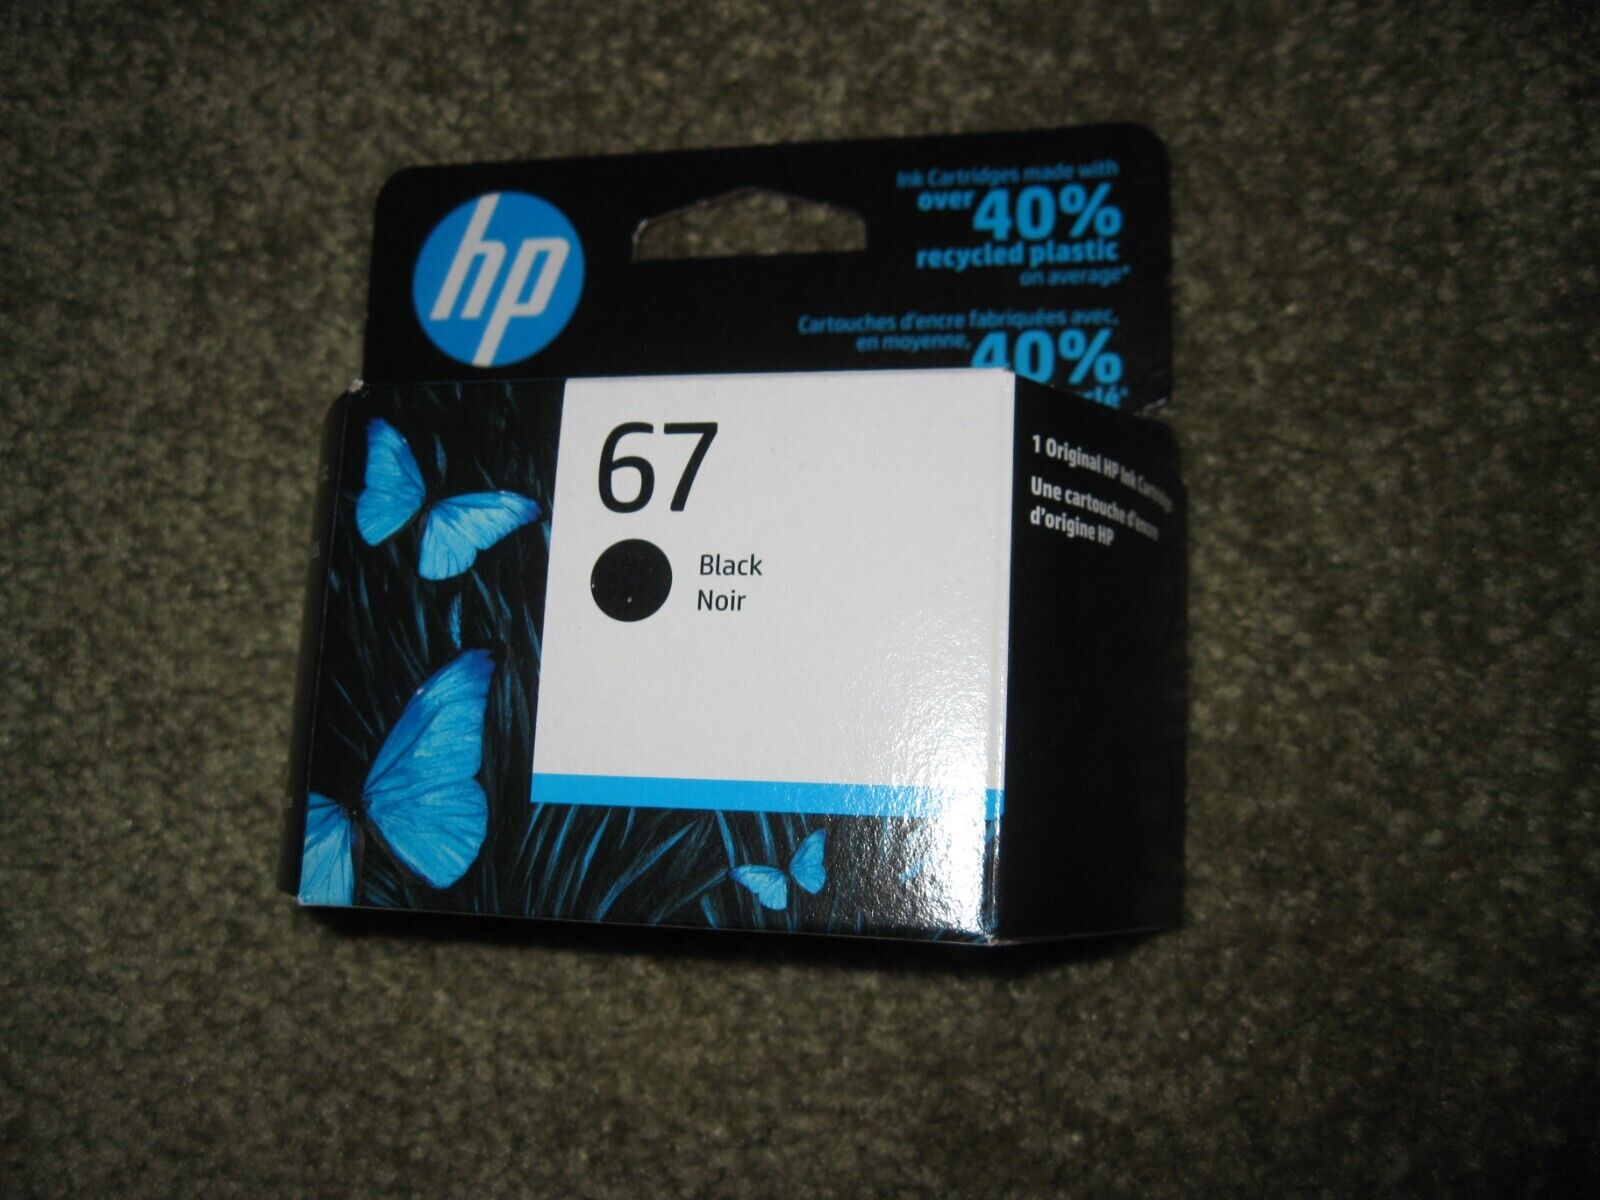 New Genuine HP 67 Black Ink Cartridge in Retail Box EXP 02/2026 